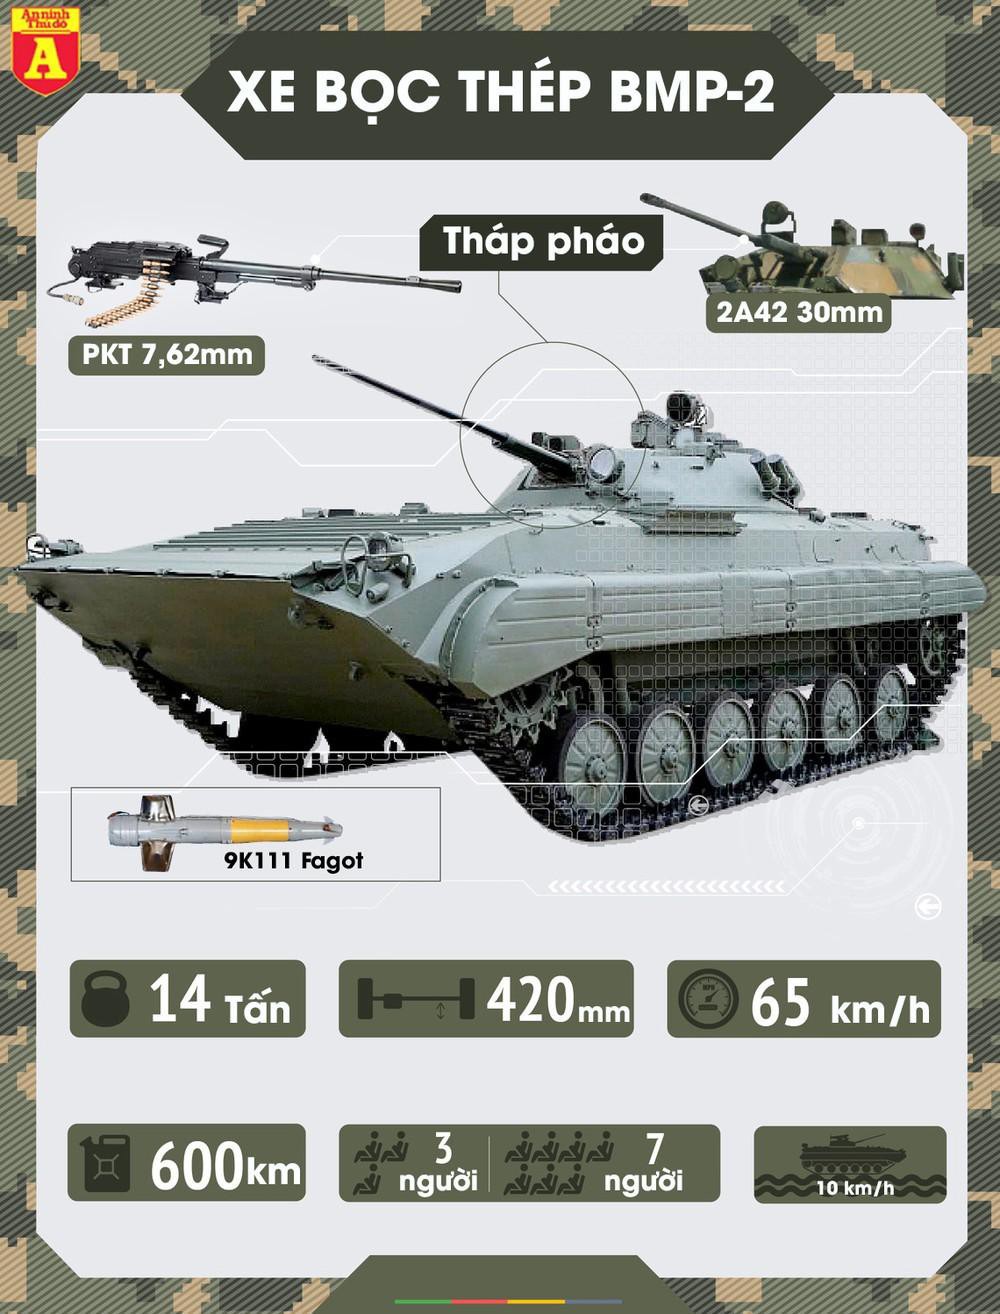 Sức mạnh "báo thép" BMP-2 Nga - Ảnh 1